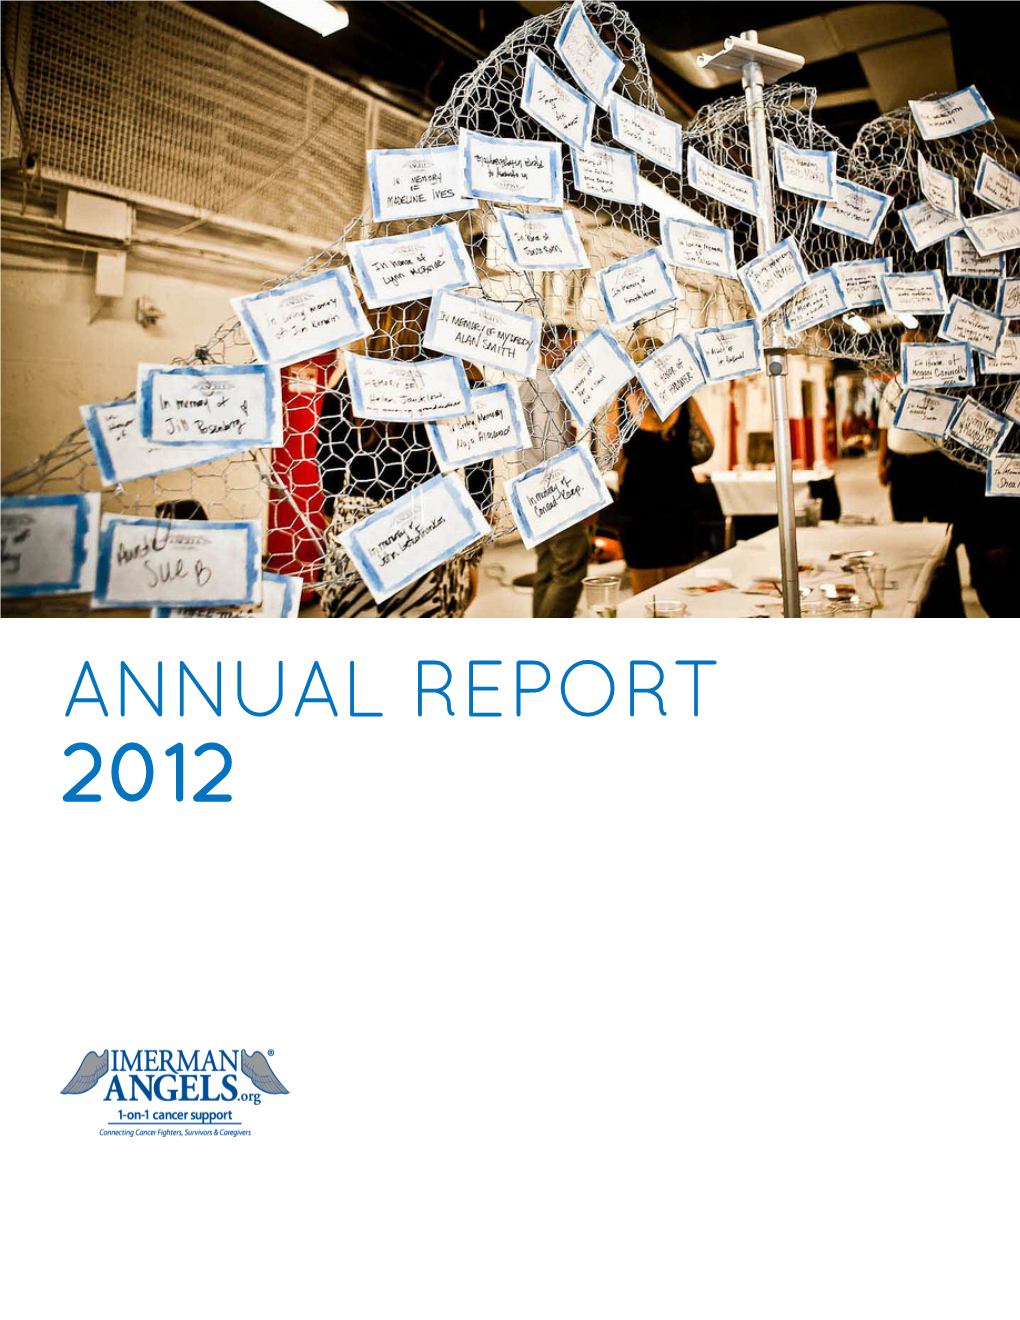 Annual Report 2012 Letter from Jonny